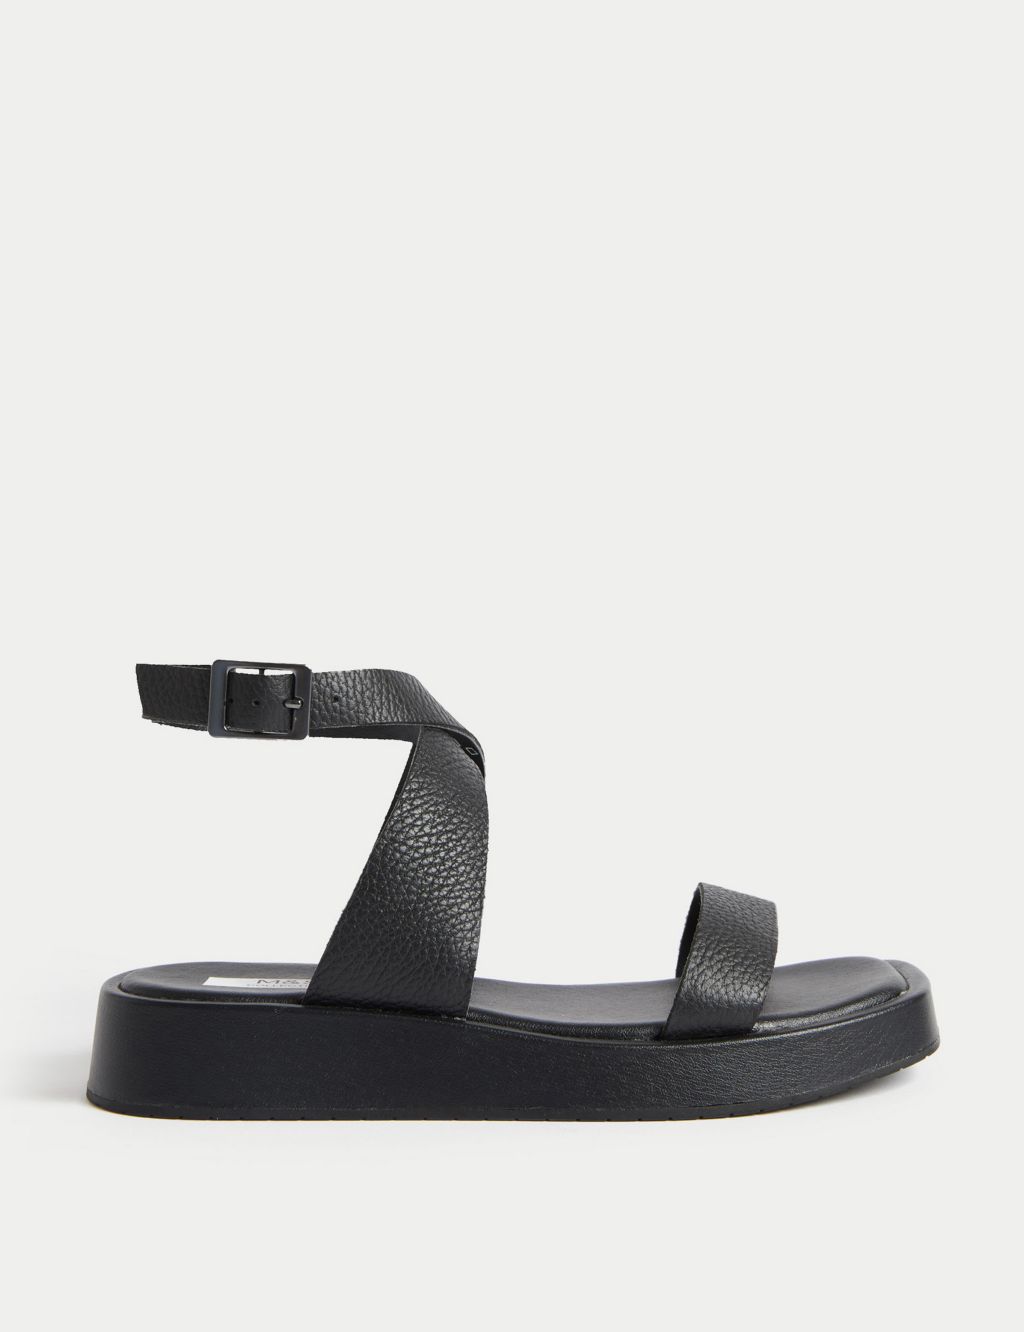 Leather Ankle Strap Flatform Sandals image 1